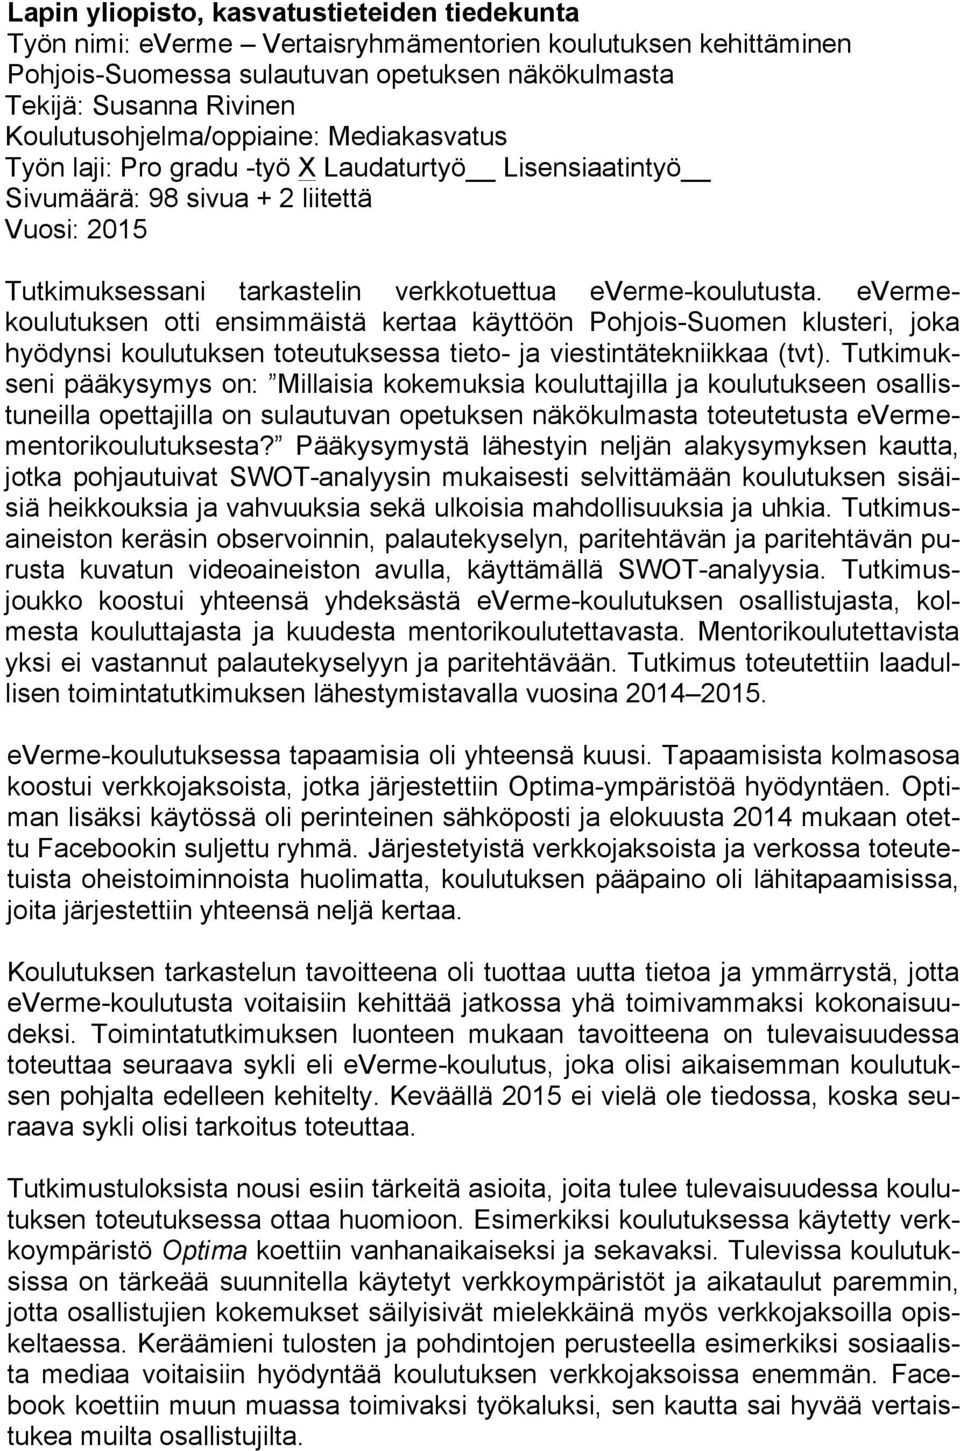 everme-koulutusta. evermekoulutuksen otti ensimmäistä kertaa käyttöön Pohjois-Suomen klusteri, joka hyödynsi koulutuksen toteutuksessa tieto- ja viestintätekniikkaa (tvt).